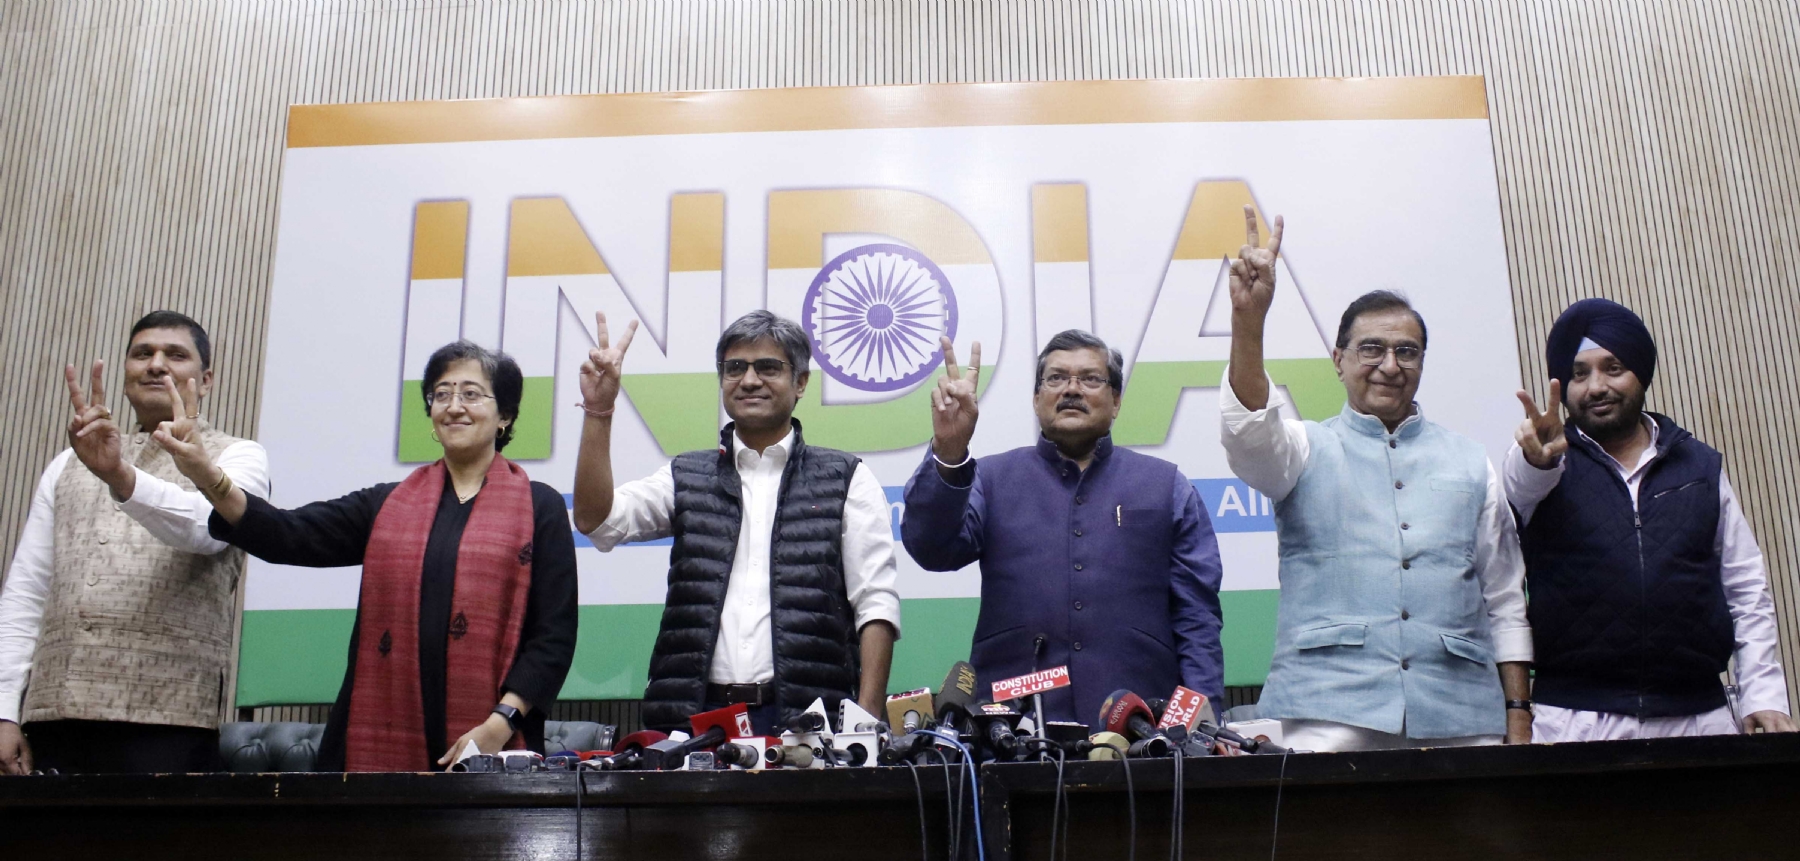 नई दिल्ली में एक संयुक्त प्रेस कॉन्फ्रेंस के दौरान आप नेता सौरभ भारद्वाज, आतिशी सिंह और संदीप पाठक और कांग्रेस नेता मुकुल वासनिक, दीपक बाबरिया और अरविंदर सिंह लवली।